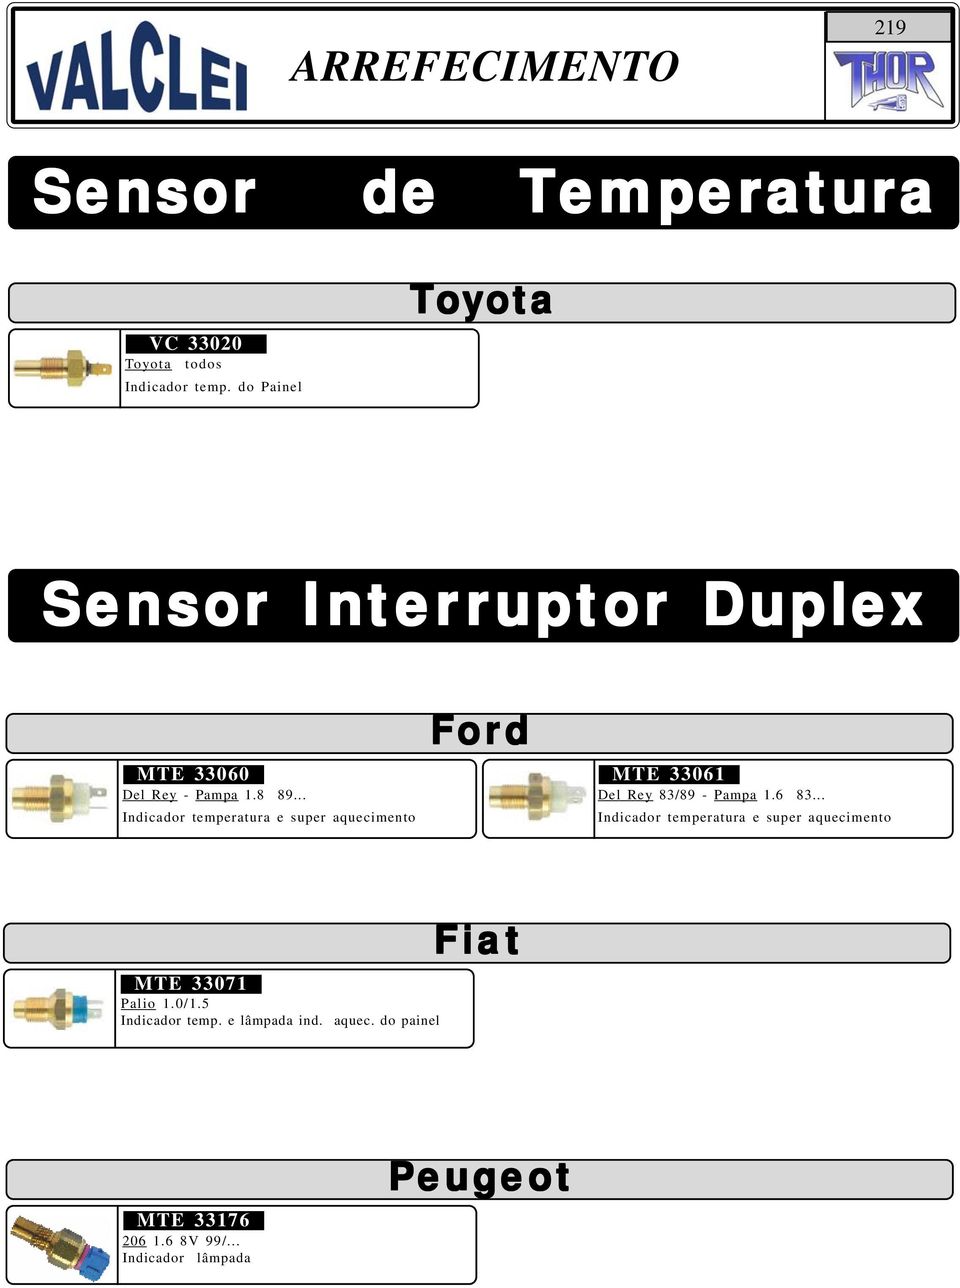 .. Indicador temperatura e super aquecimento For ord MTE 33061 Del Rey 83/89 - Pampa 1.6 83.